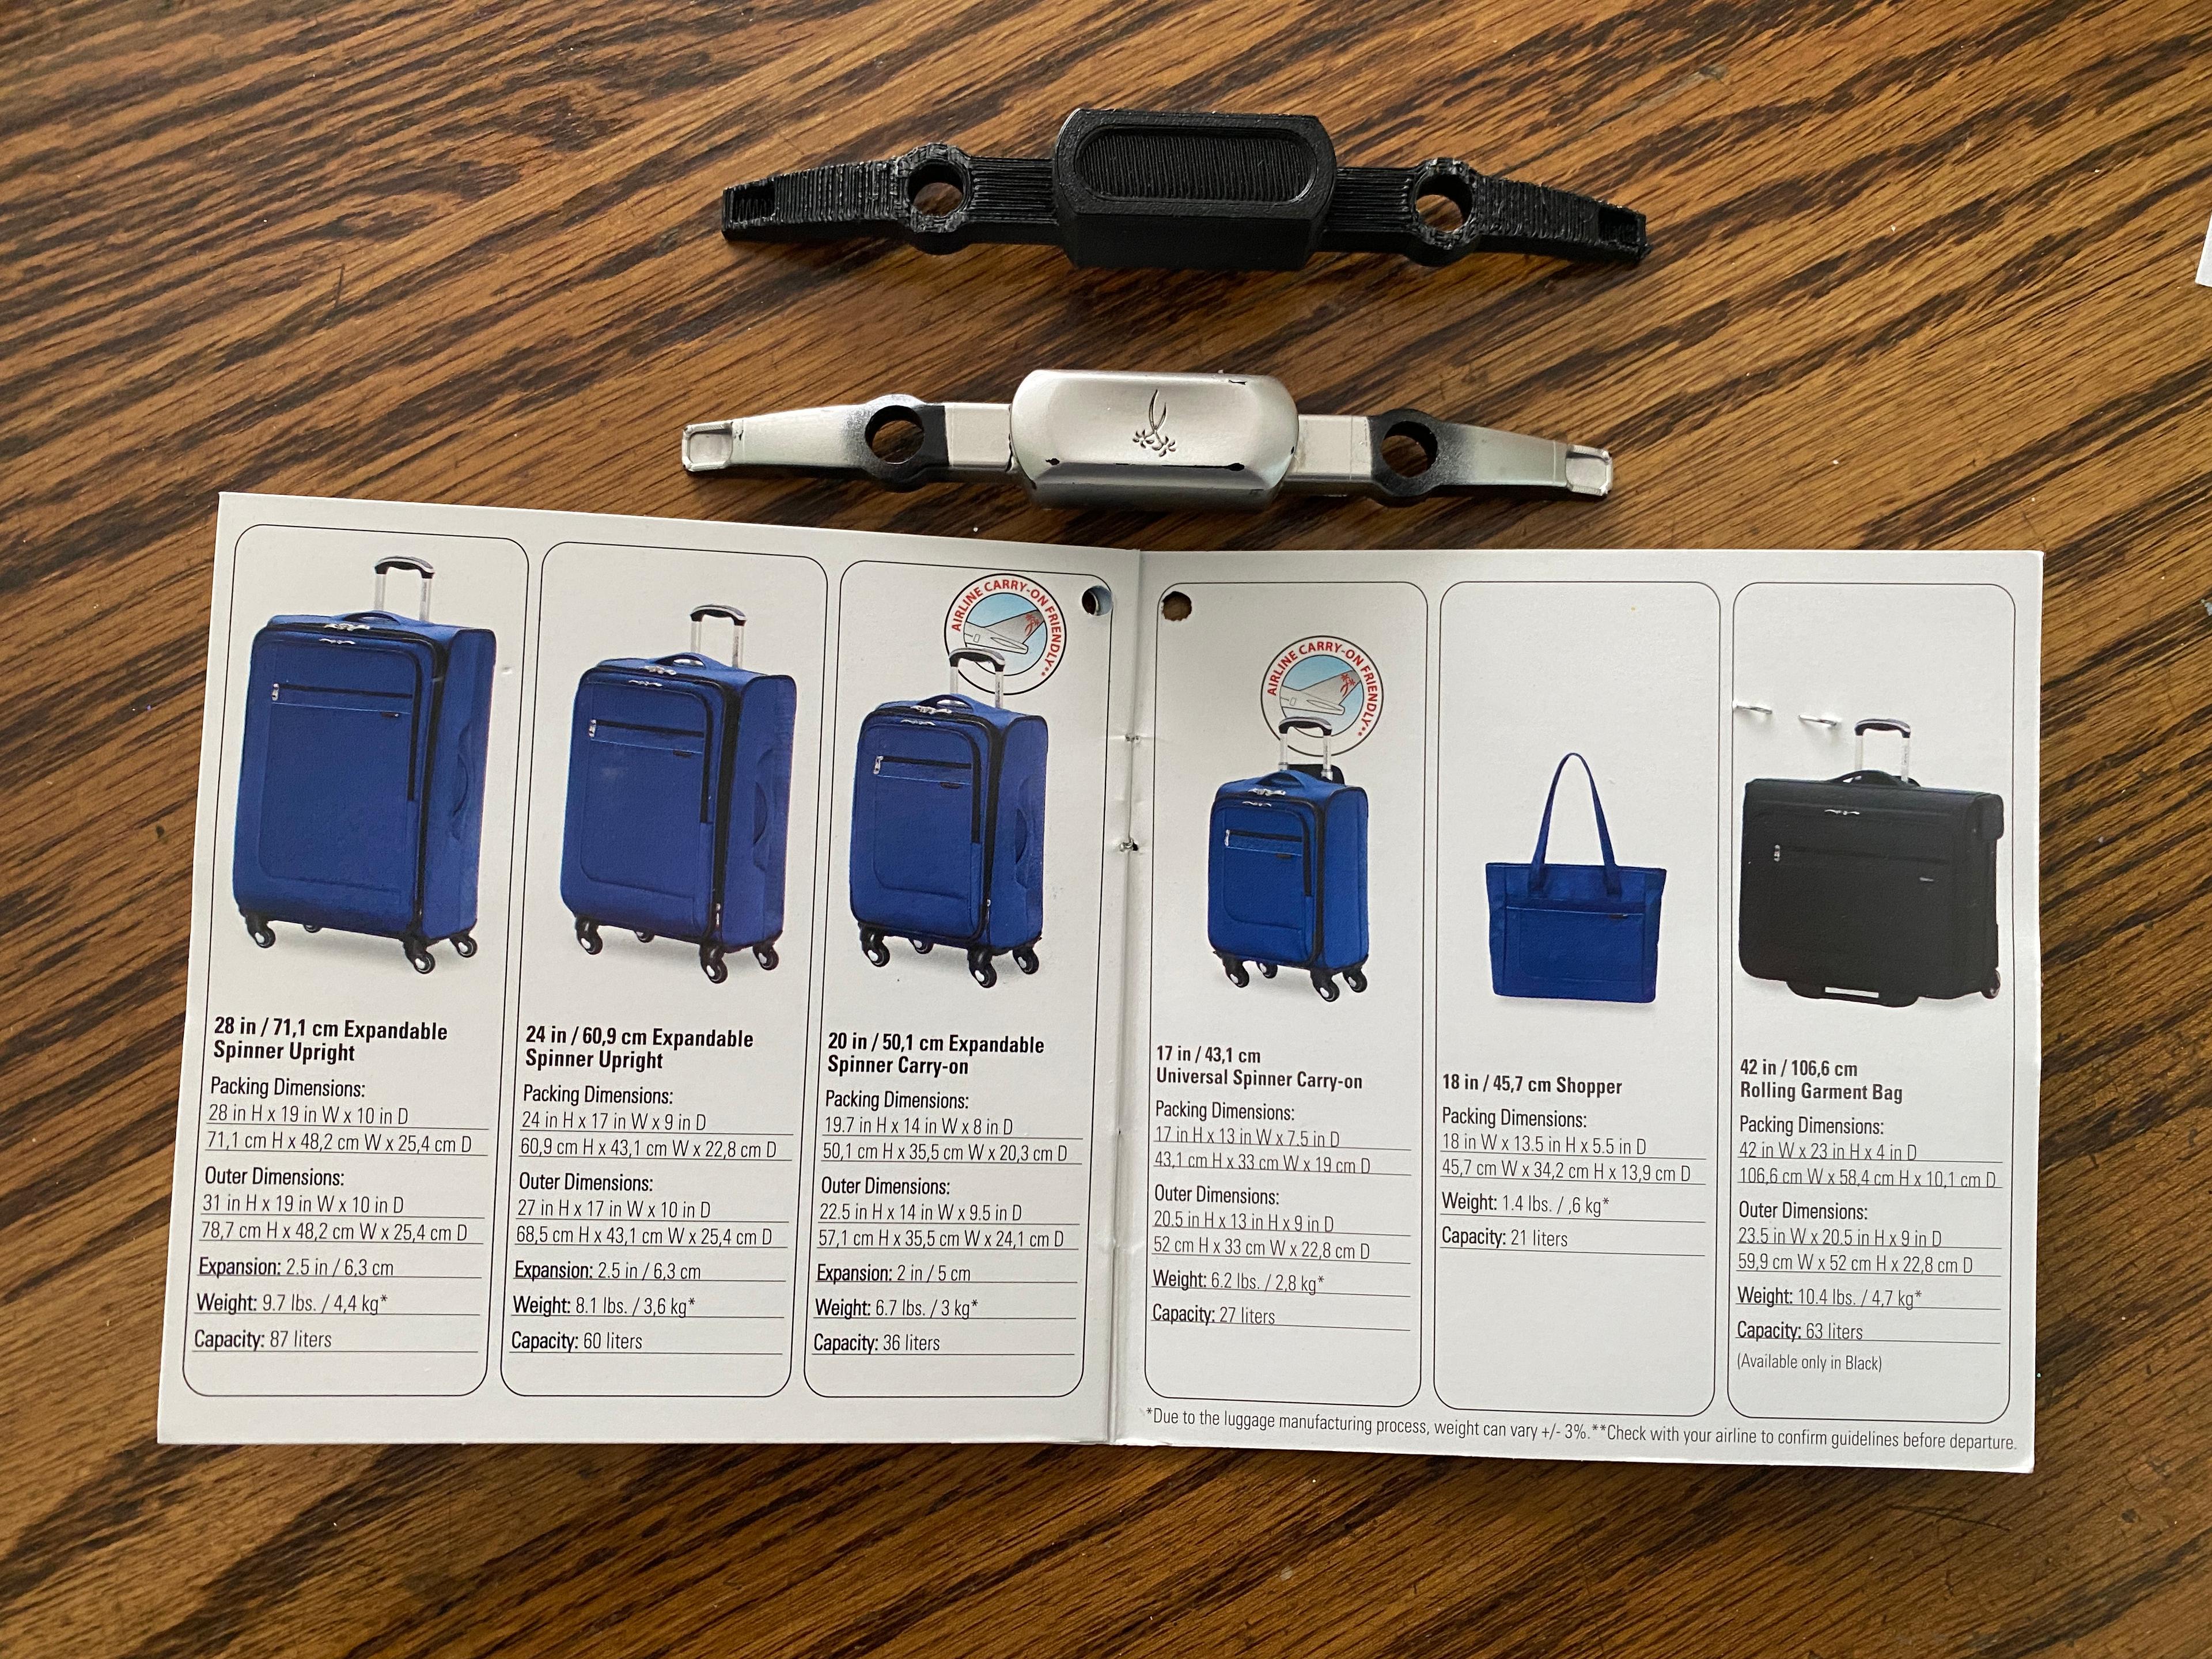 Ricardo Suitcase Handle Button 3d model